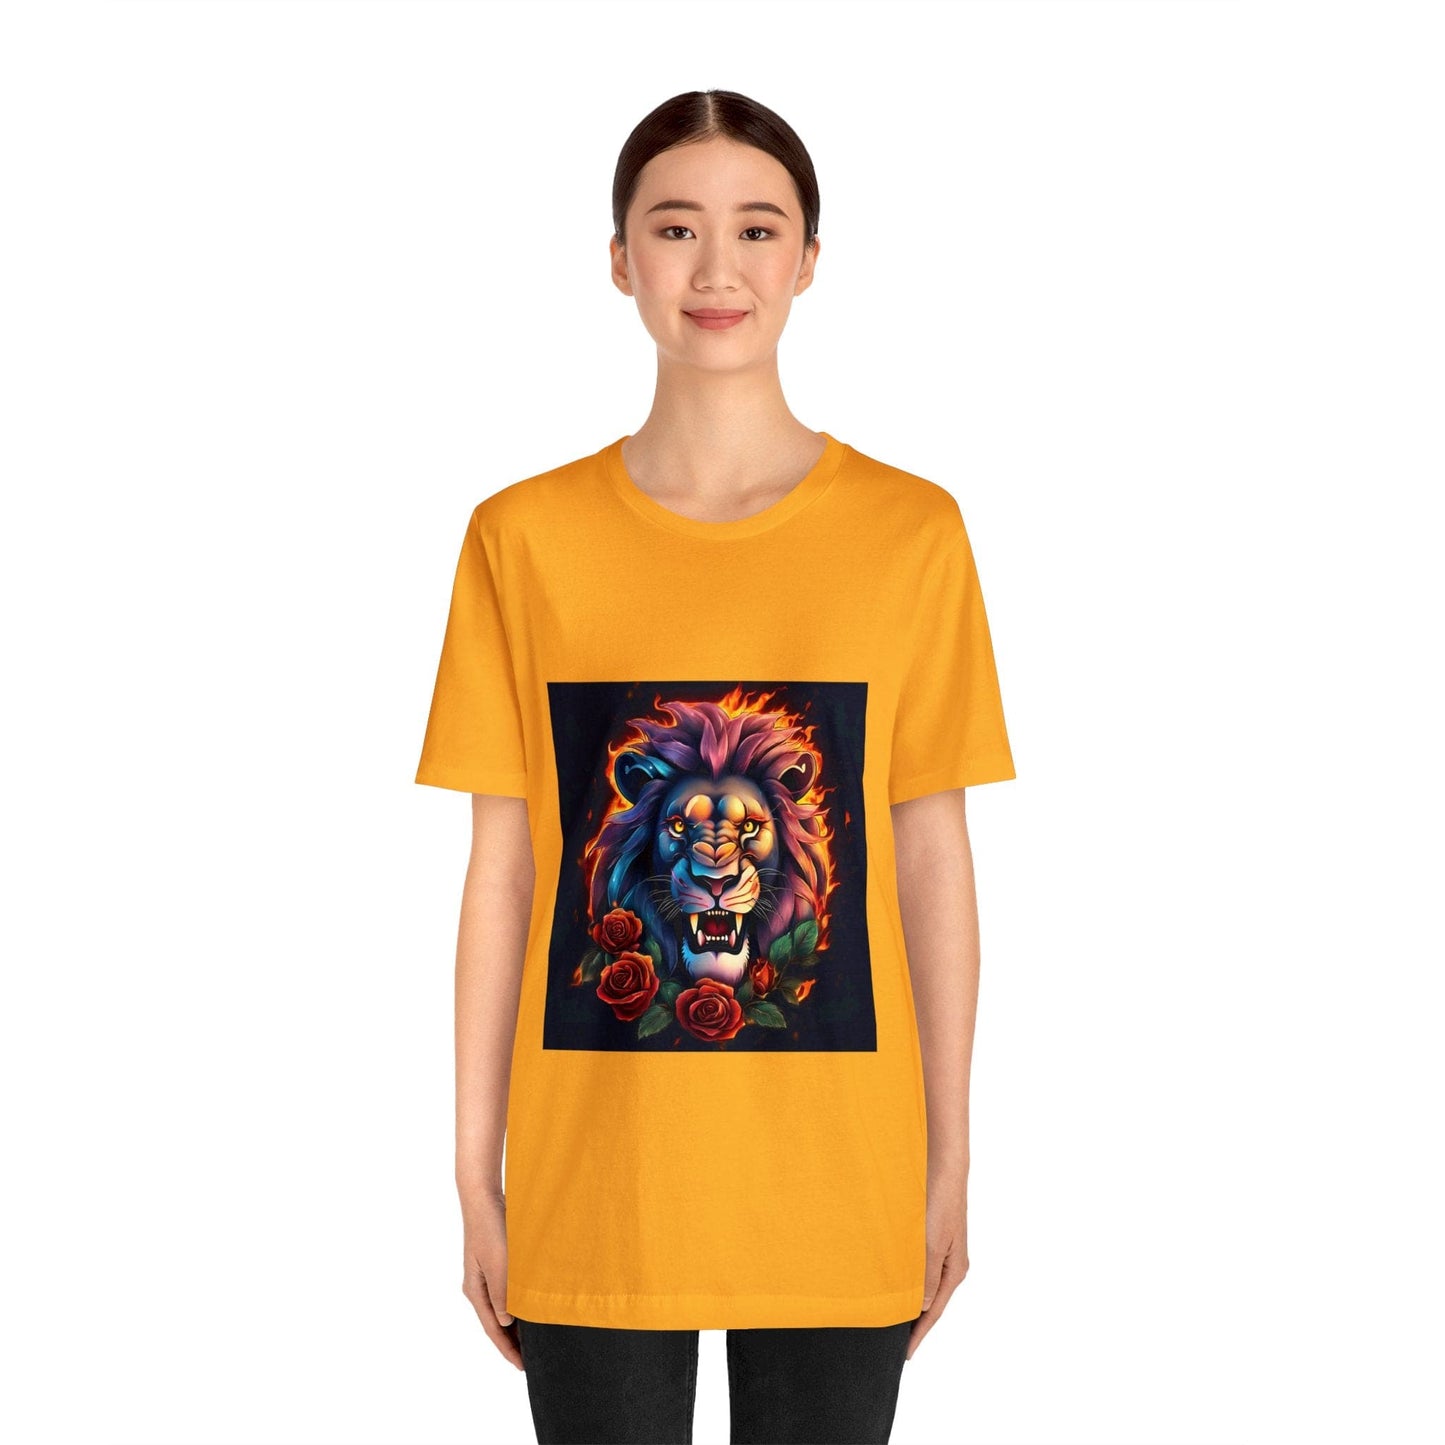 Ojo de León Valiente Llamas y Rosas Unisex Jersey Camiseta de manga corta Flashlander